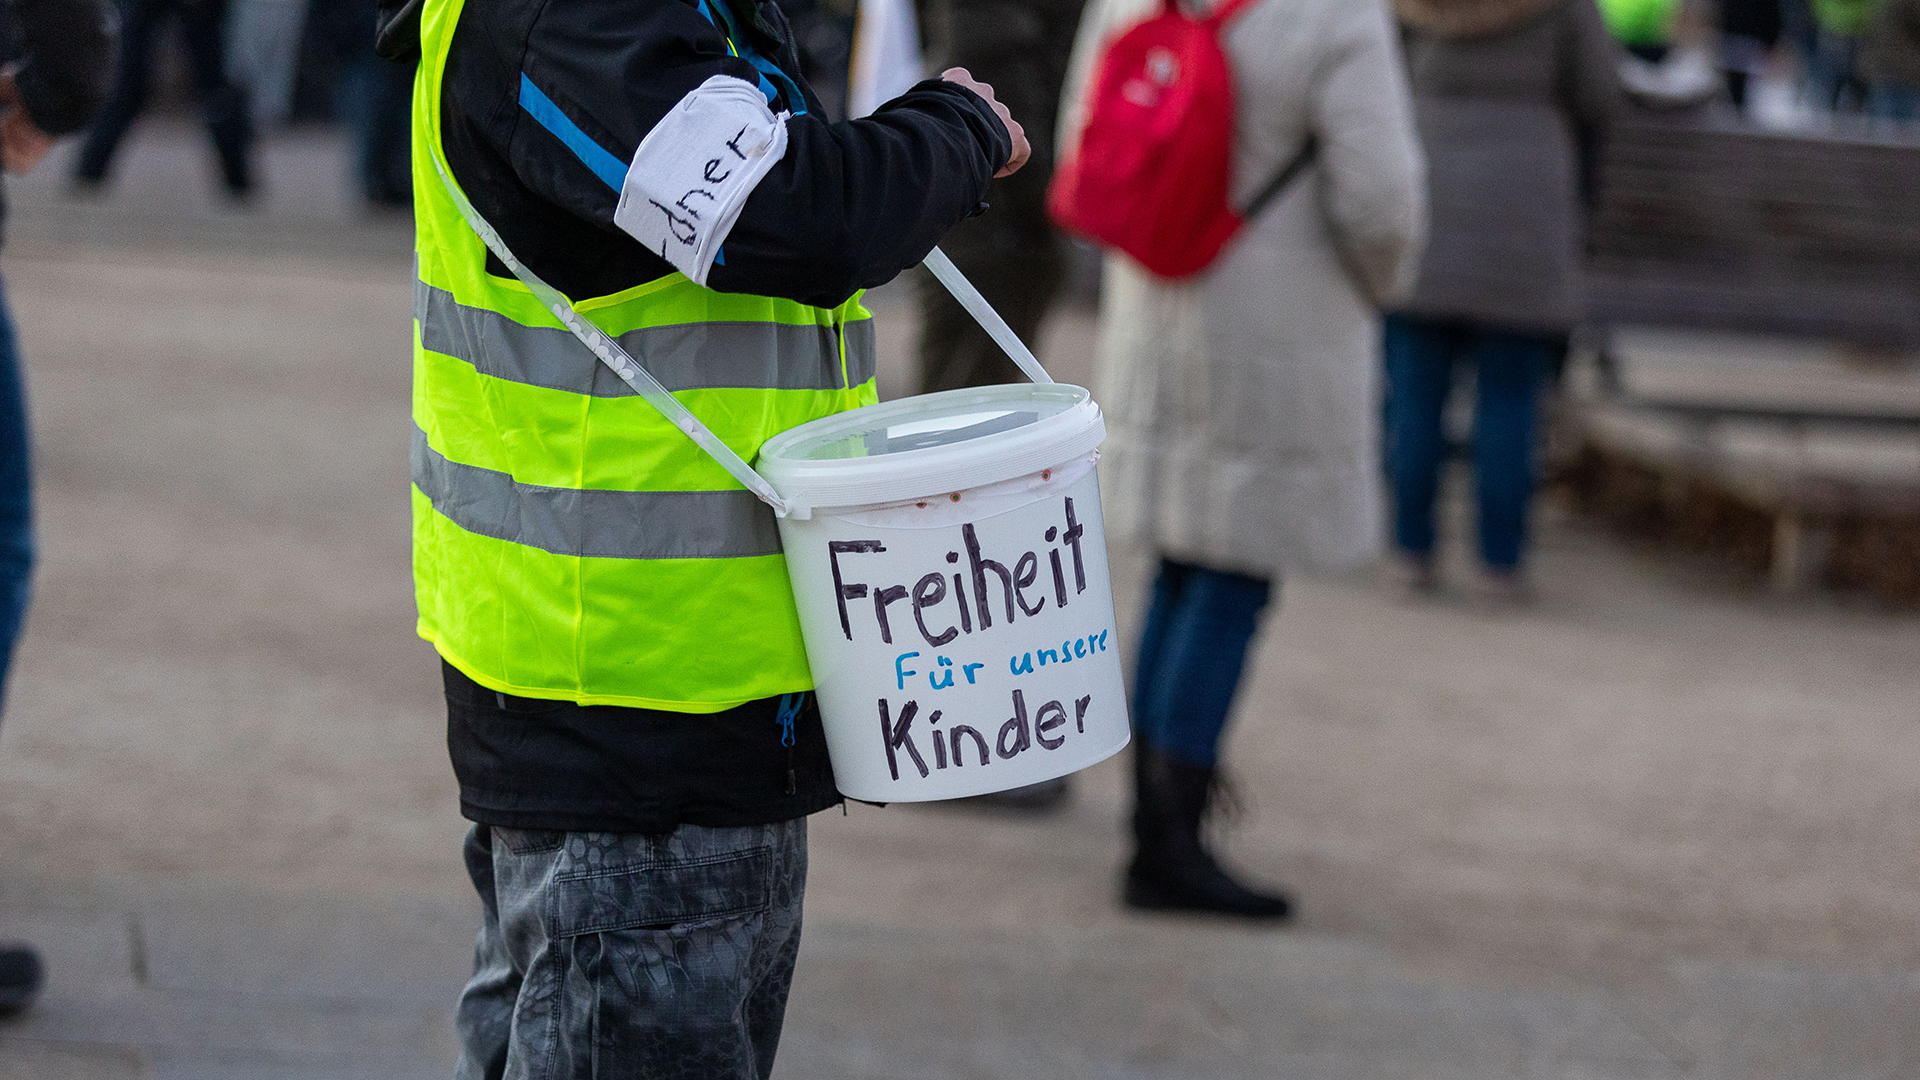 Ein Demonstrant trägt einen Eimer mit der Aufschrift "Freiheit für unsere Kinder".